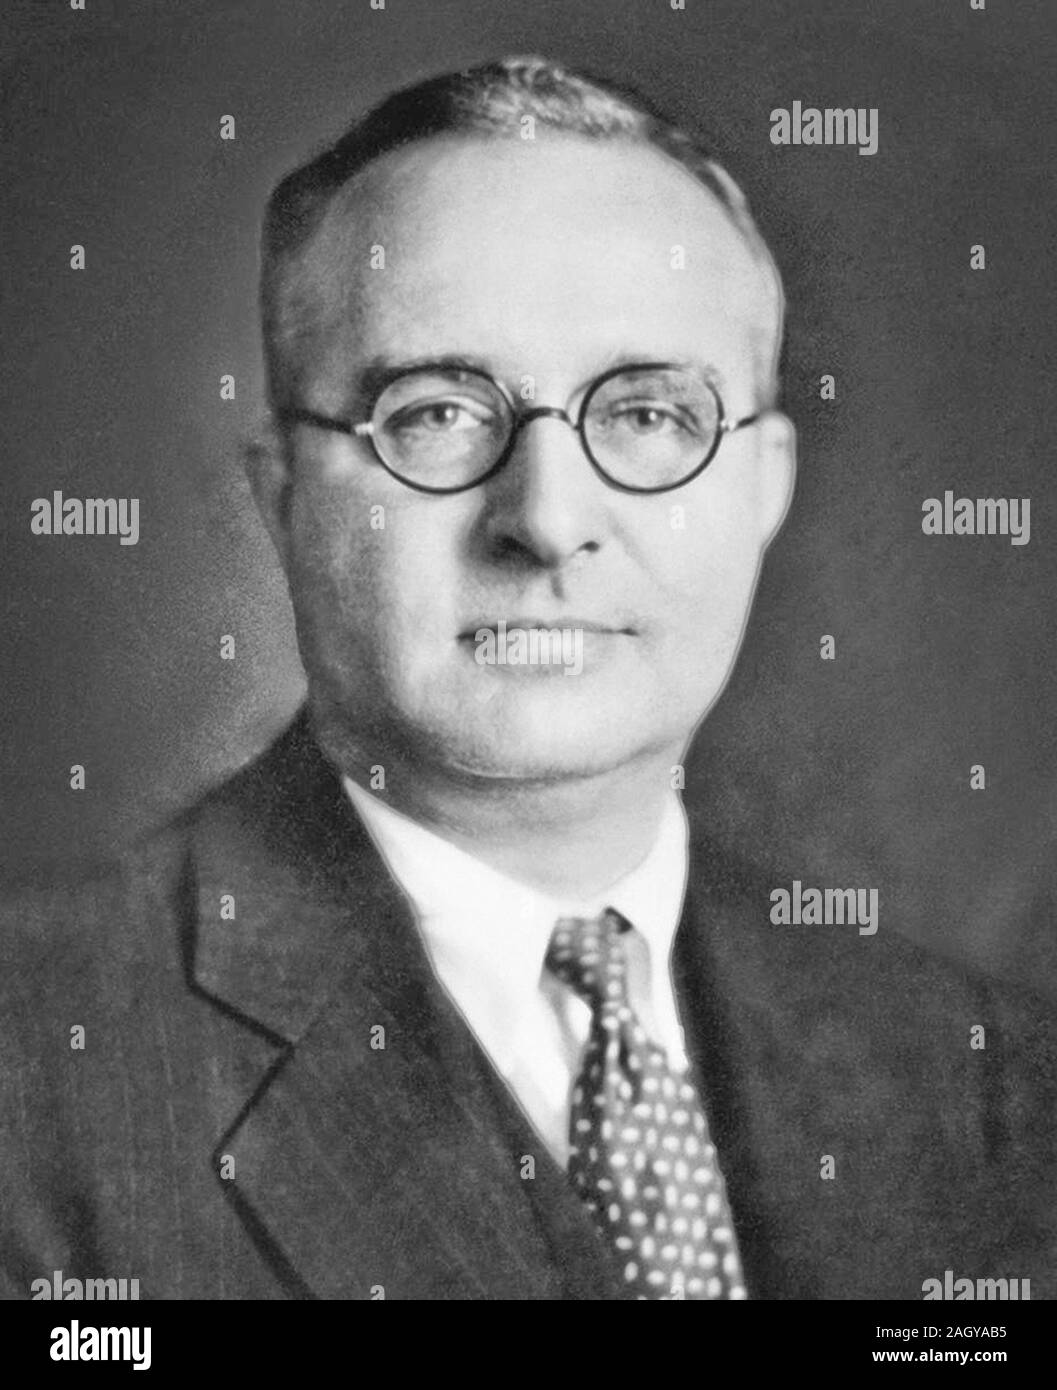 Thomas Midgley Jr, Thomas Midgley Jr. (1889 - 1944), ingeniero mecánico y químico estadounidense. Desempeñó un papel importante en el desarrollo de la gasolina con plomo (Tetraethyllead) y algunas de las primeras emisiones de clorofluorocarbonos (CFC), mejor conocido por su nombre comercial, el freón Foto de stock